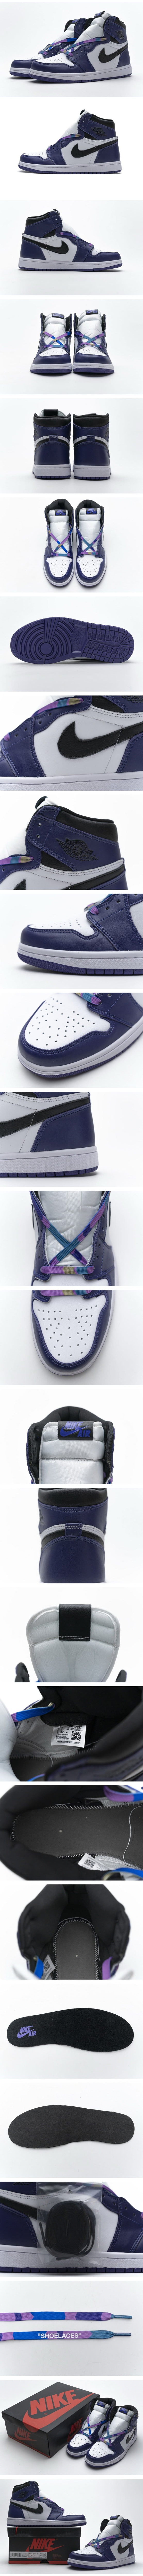 Nike Air Jordan 1 High OG “Court Purple